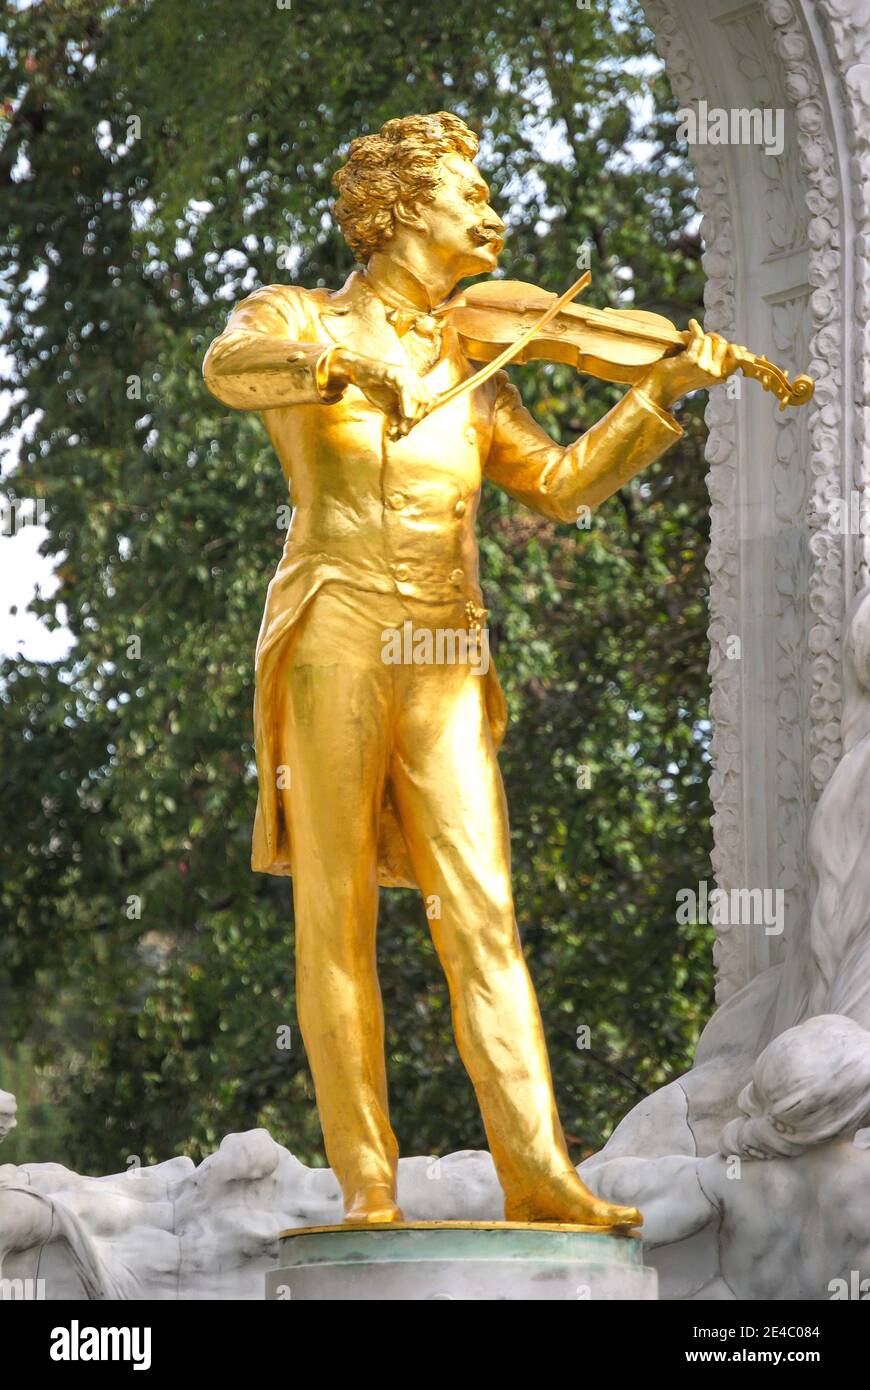 Johann Strauss Statue, Stadpark, Vienna, Wein, Republic of Austria Stock Photo